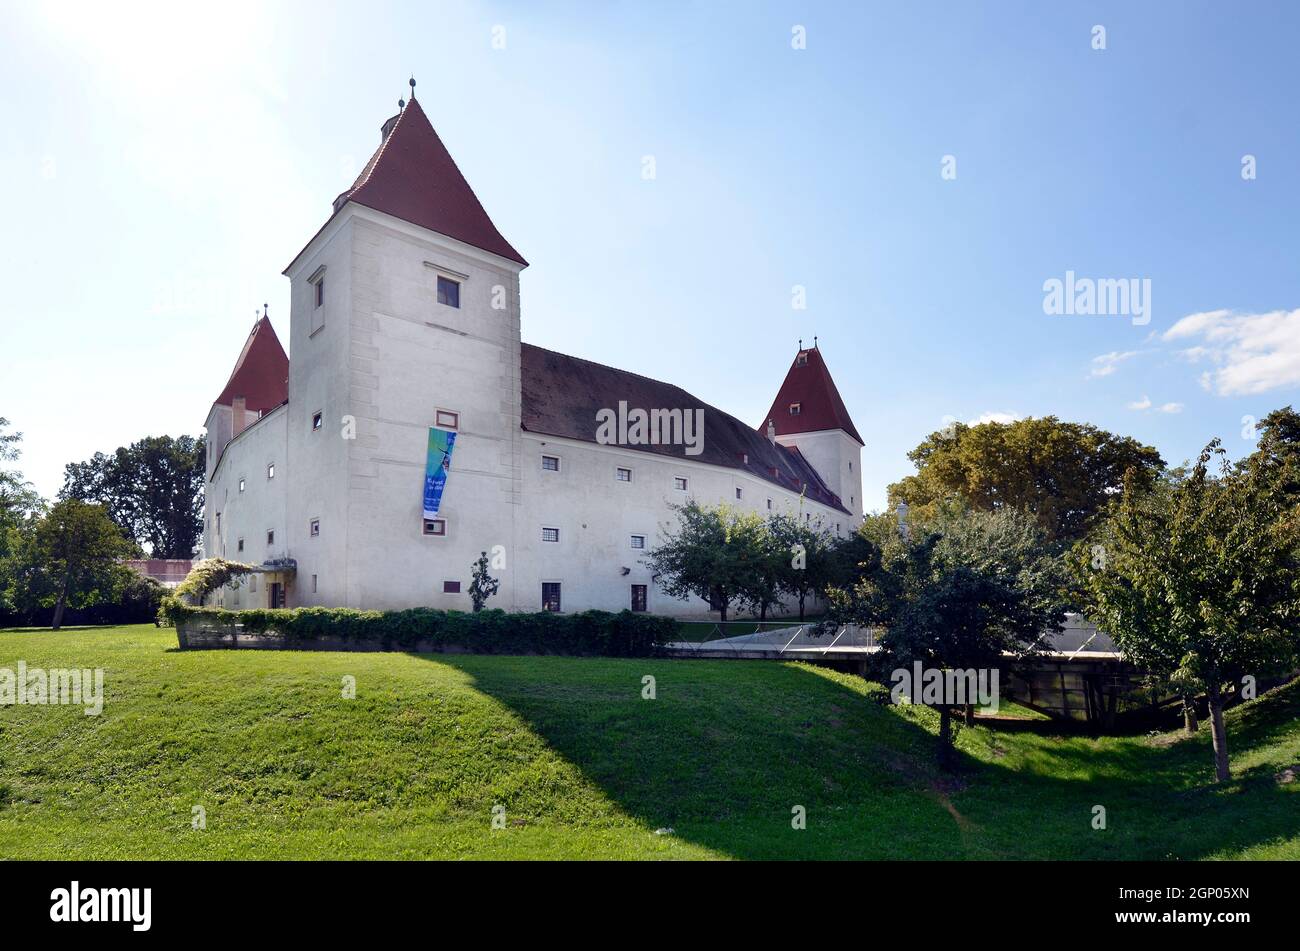 Österreich, Schloss Orth in Niederösterreich, ehemaliges Wasserschloss, das heute als Museum und Informationszentrum des Nationalparks Donau-Auen genutzt wird Stockfoto